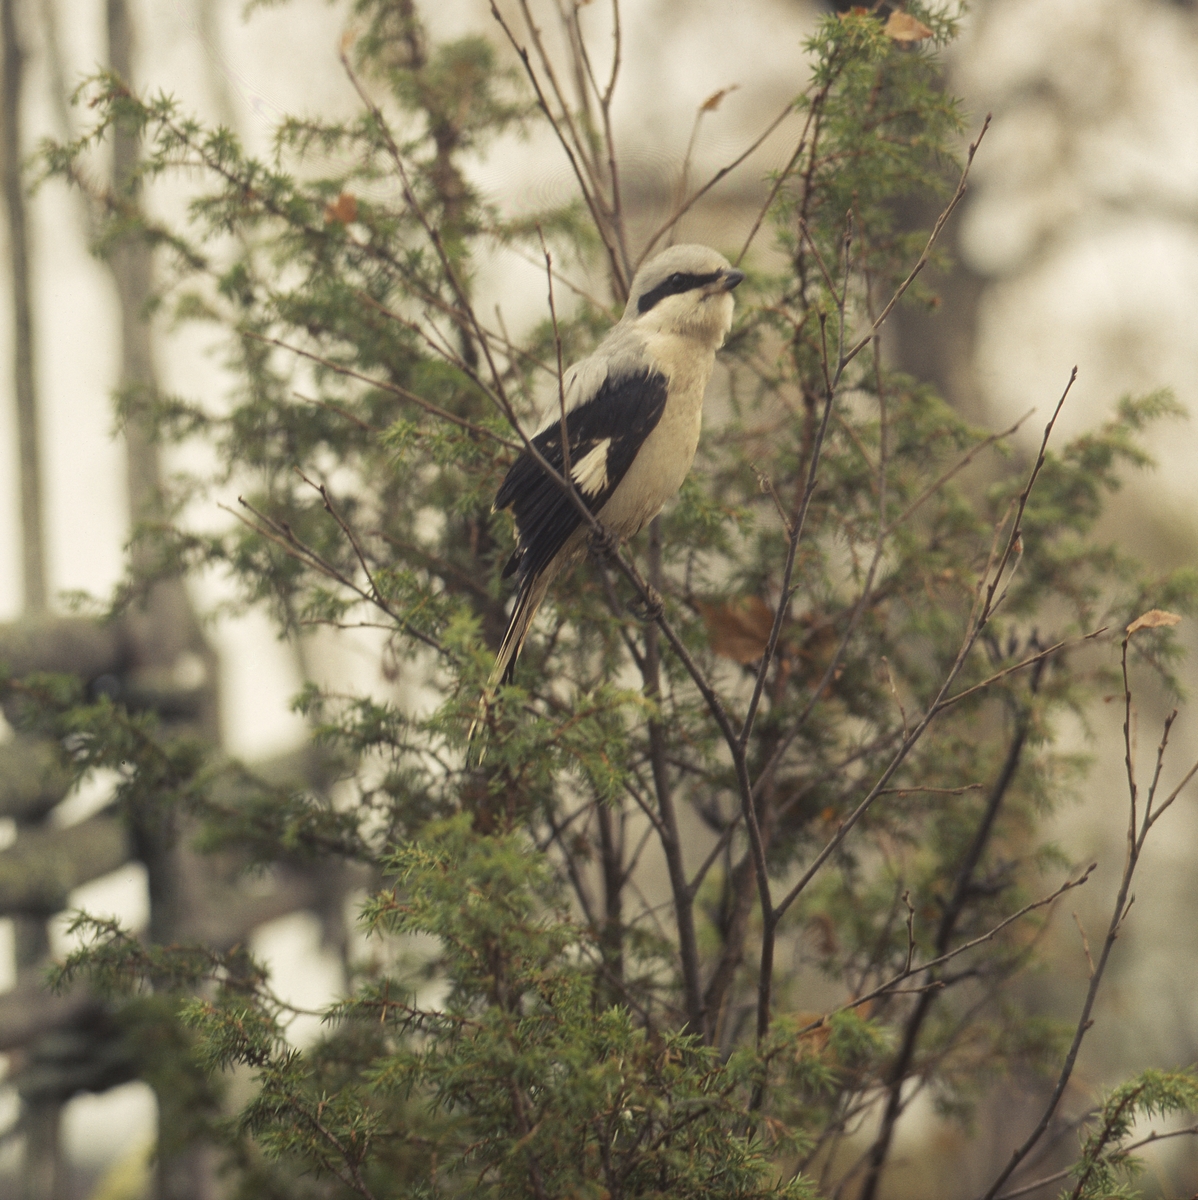 En varfågel sitter på en kvist framför en enbuske och gärdesgård.